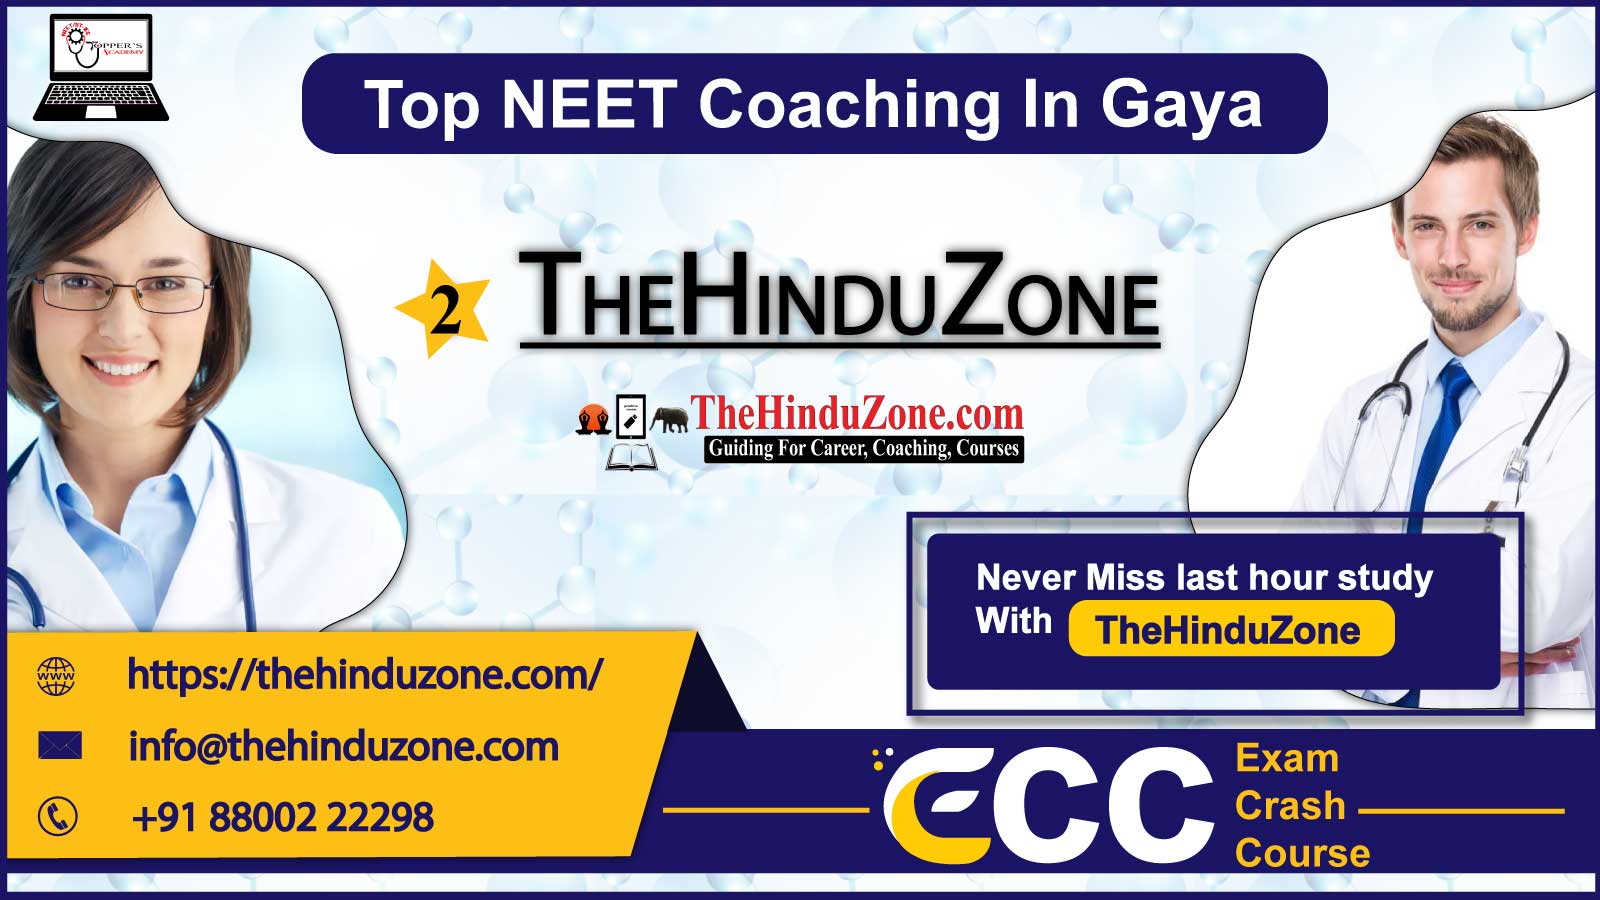 The Hinduzone NEET Coaching in Gaya